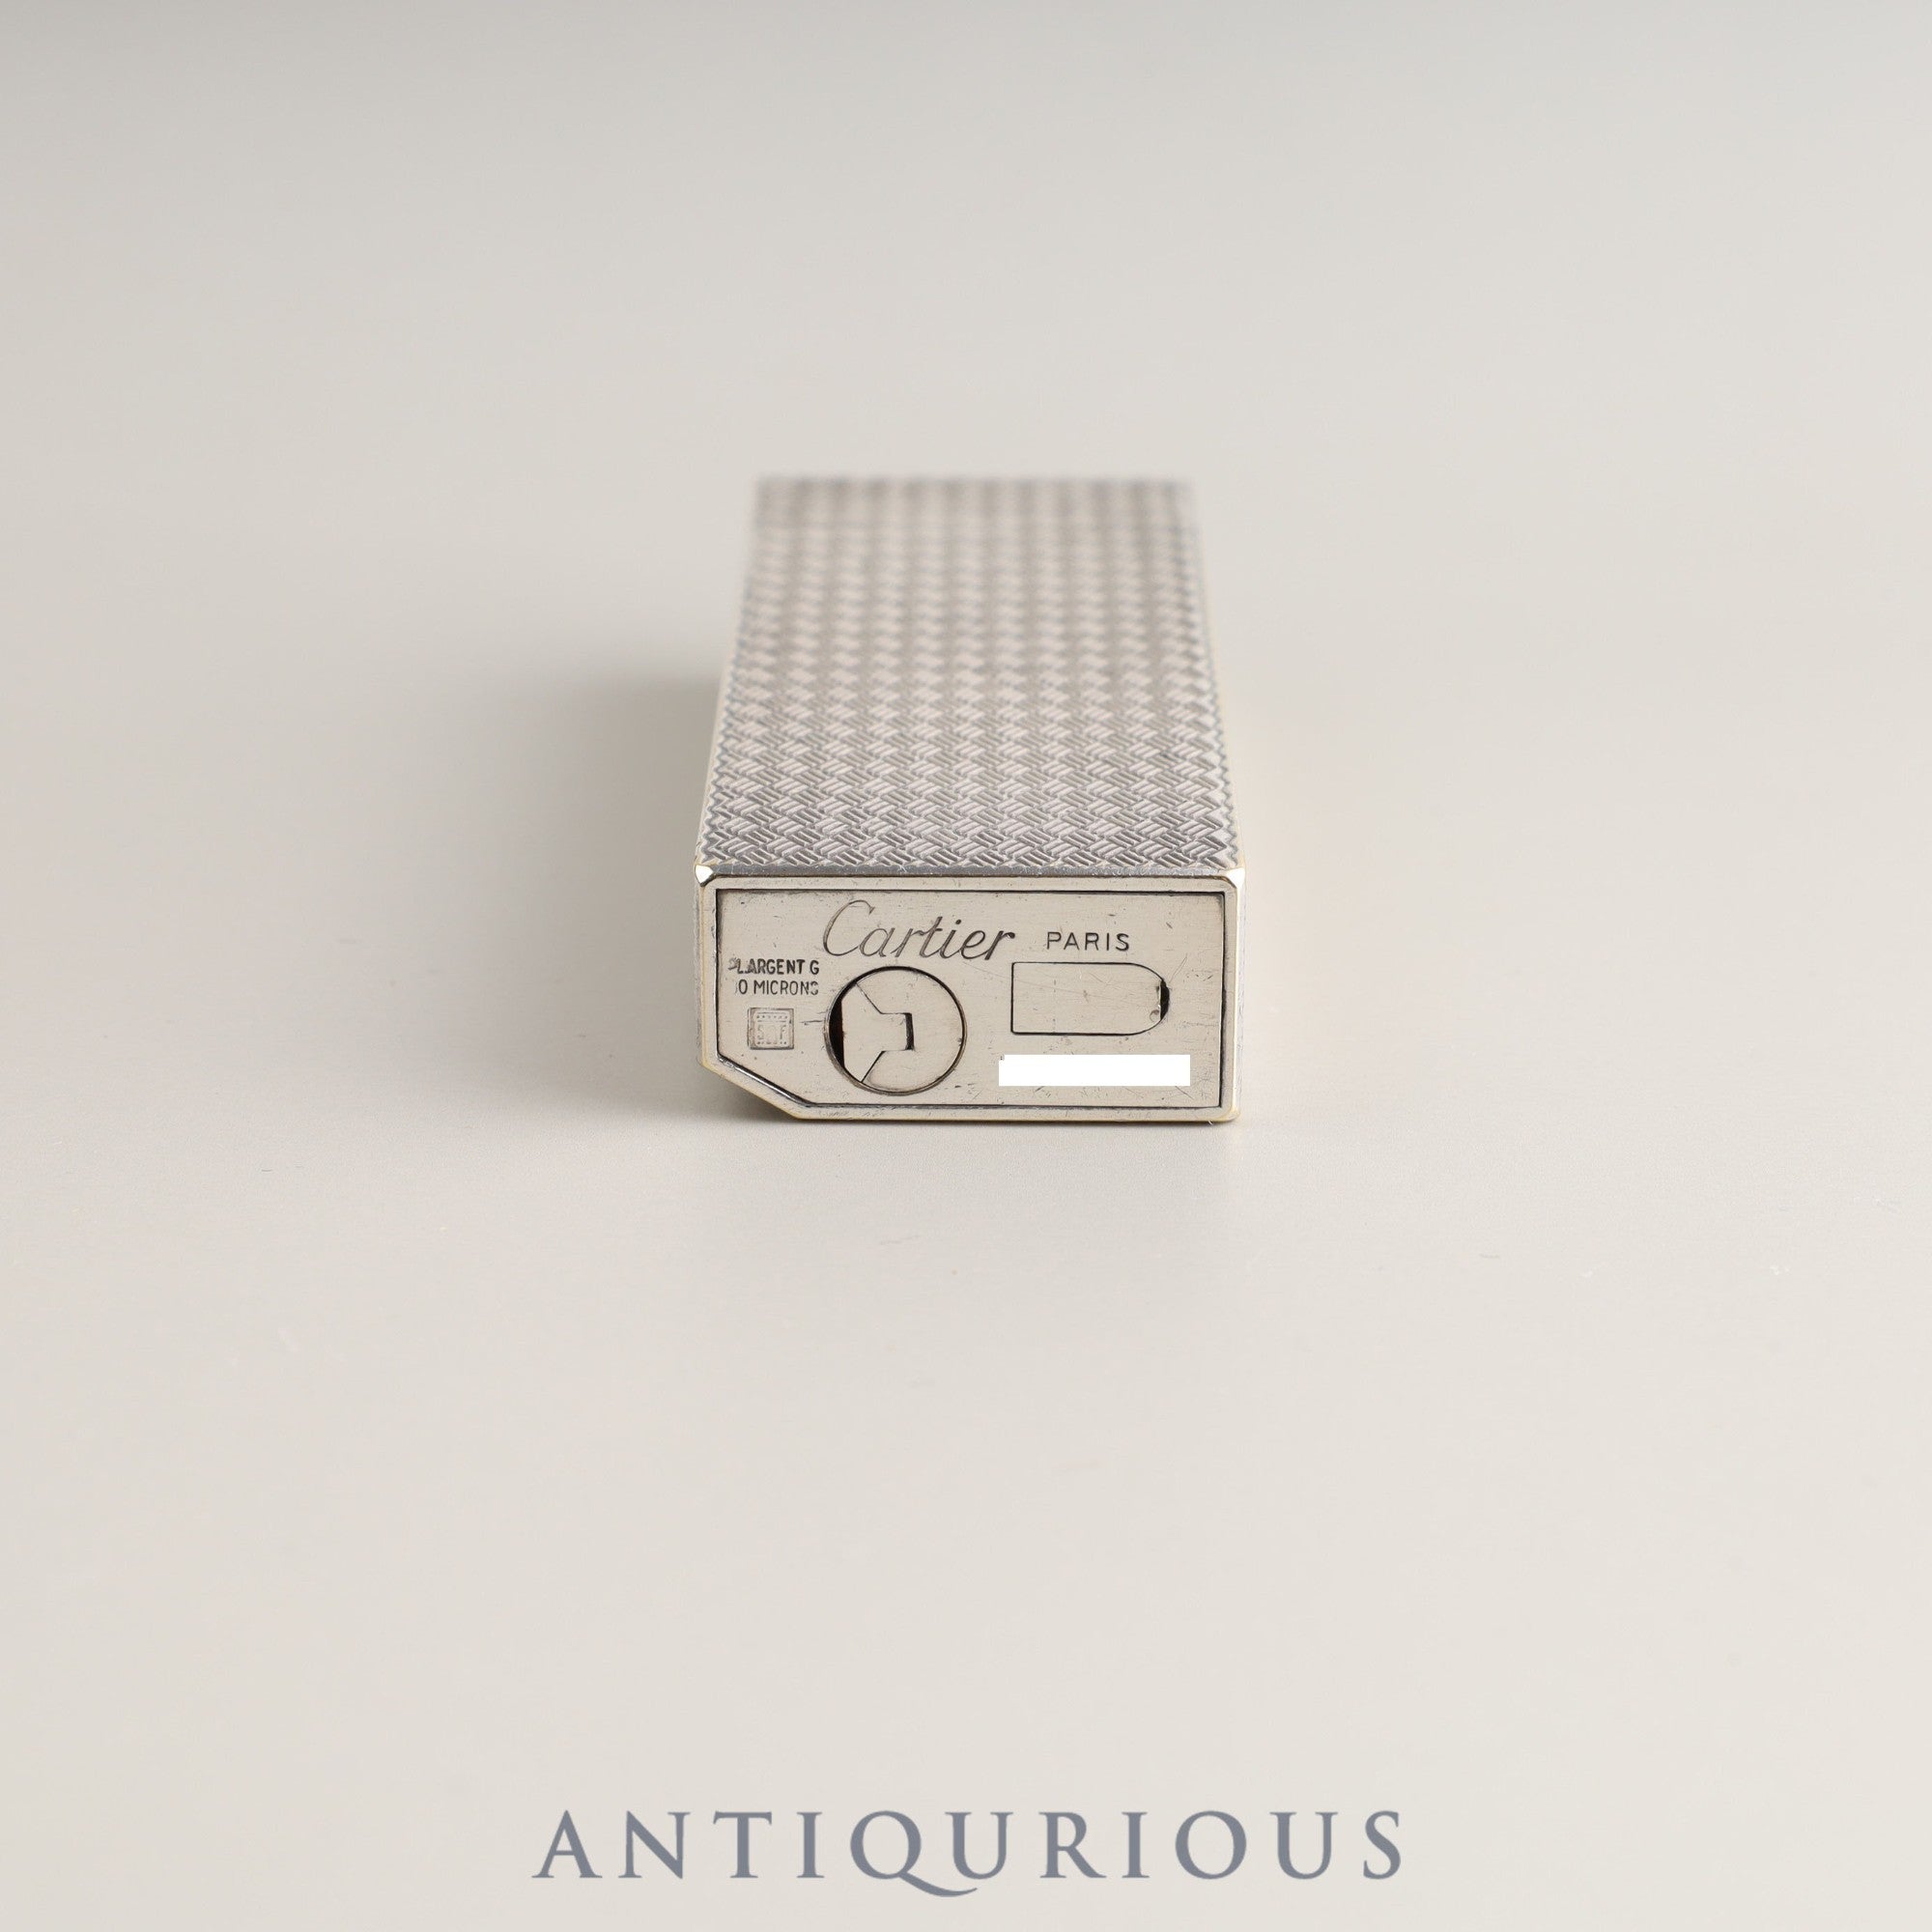 Cartierカルティエライター トリニティ ペンタゴン模様 黒ラッカーc103 - 小物